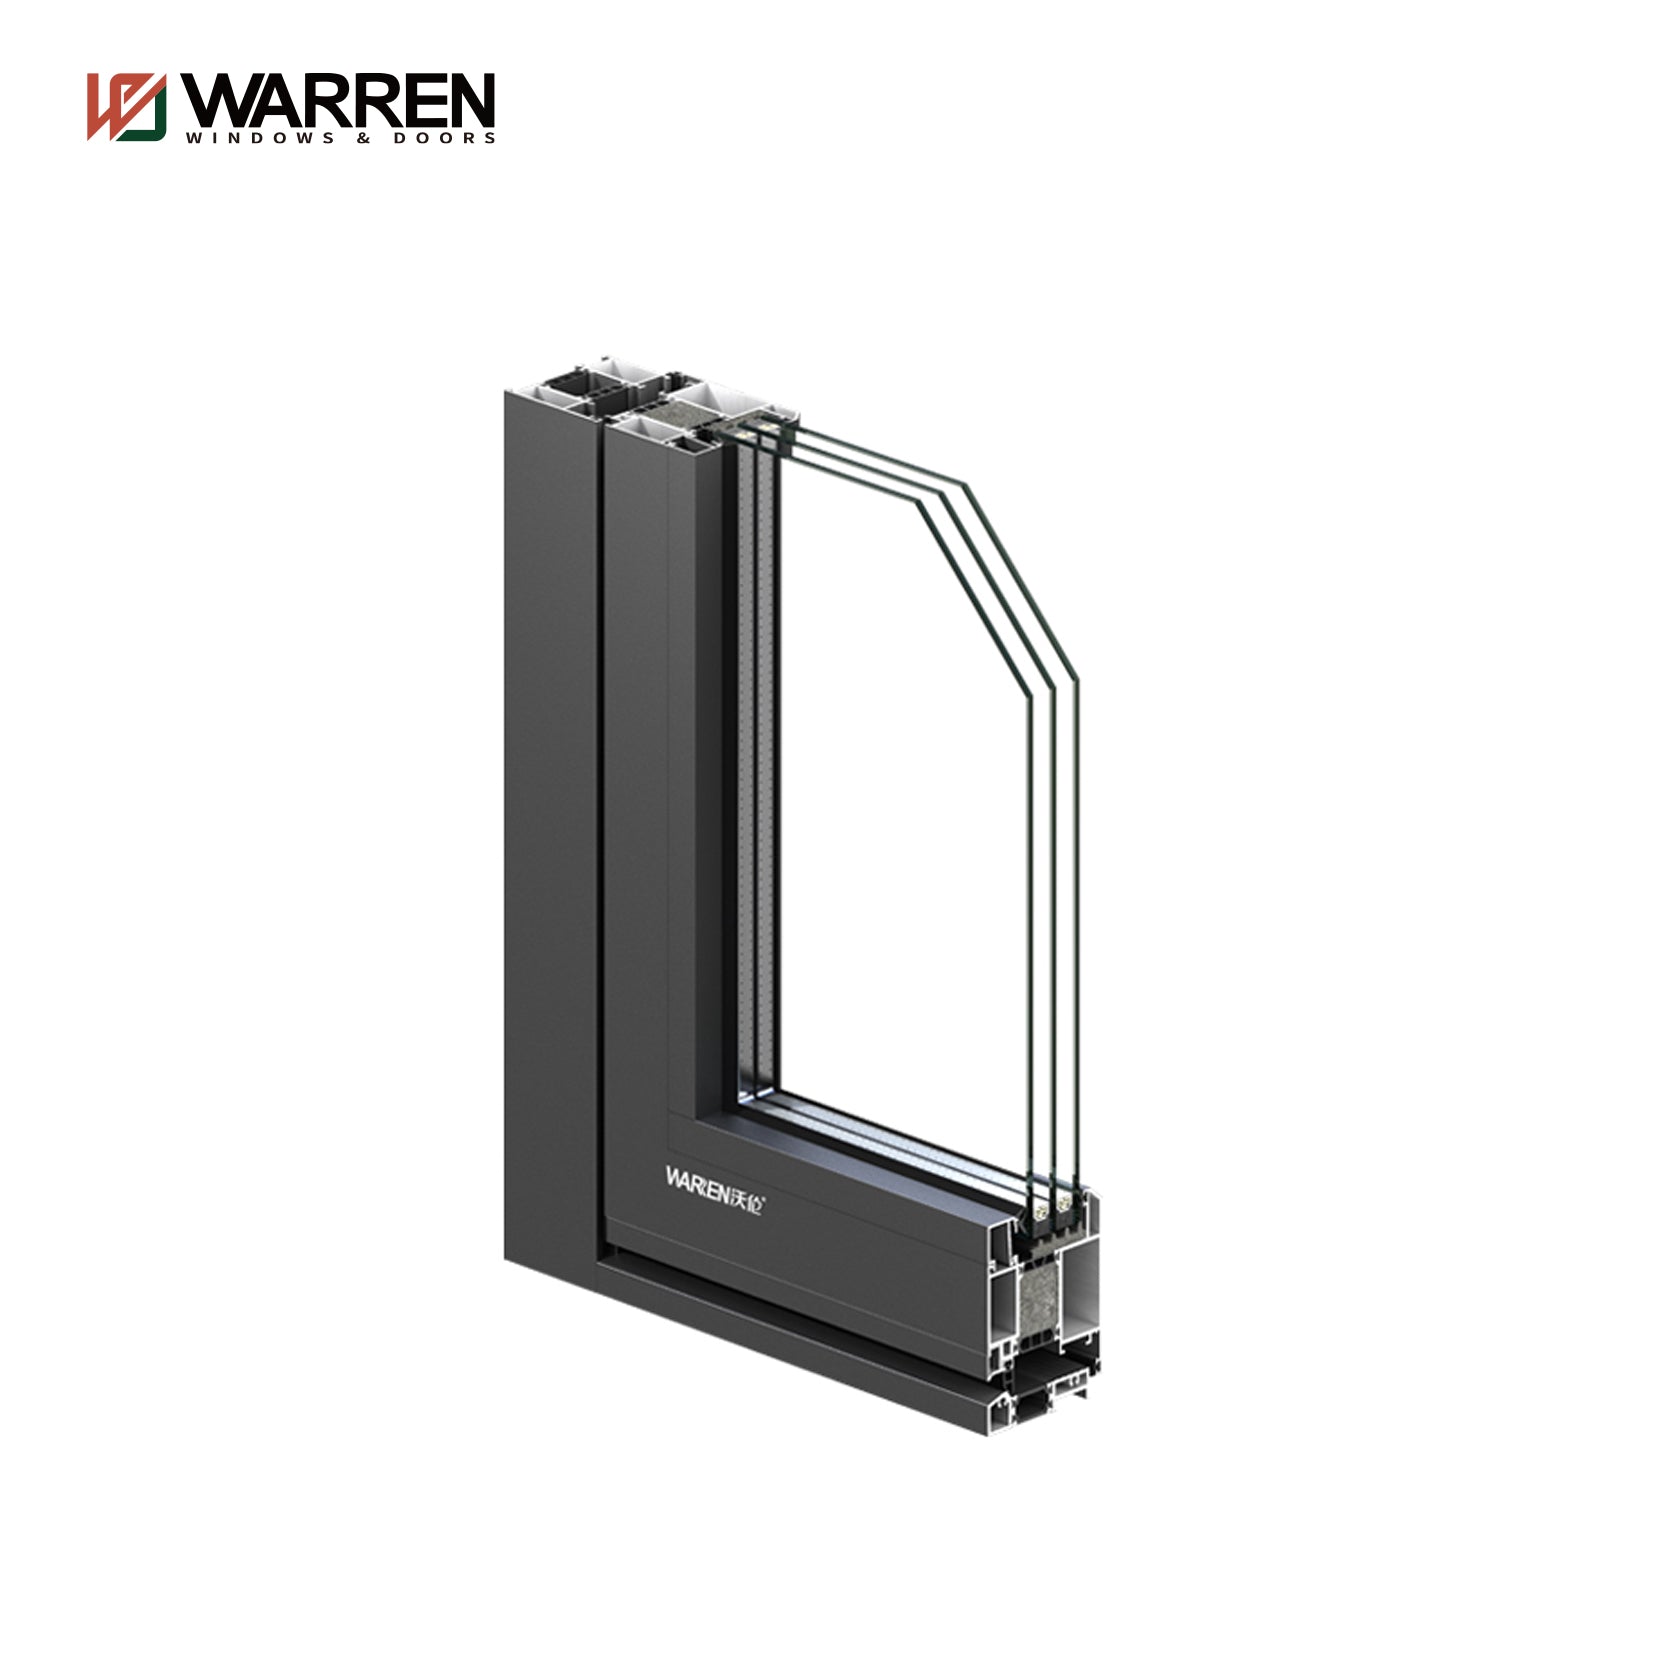 Warren Factory Sale Double Glass Heat Insulation Patio French Hinged Door Aluminum Doors